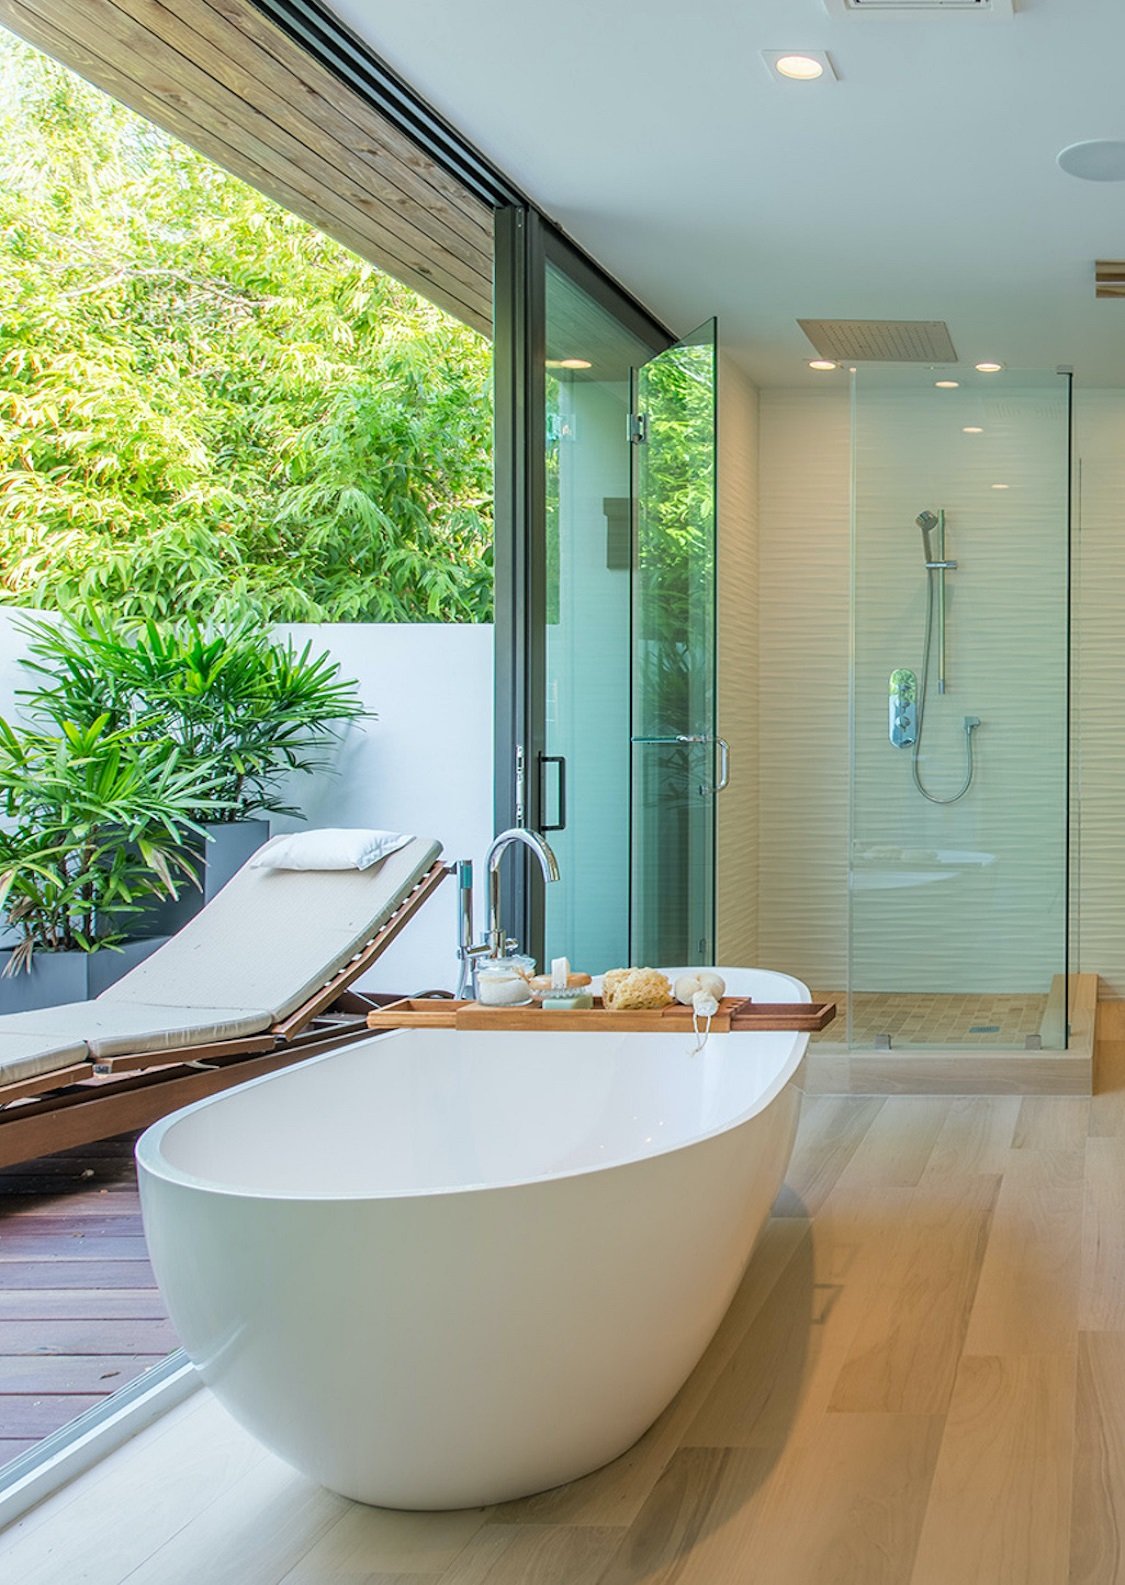 Bathroom luxury interior design